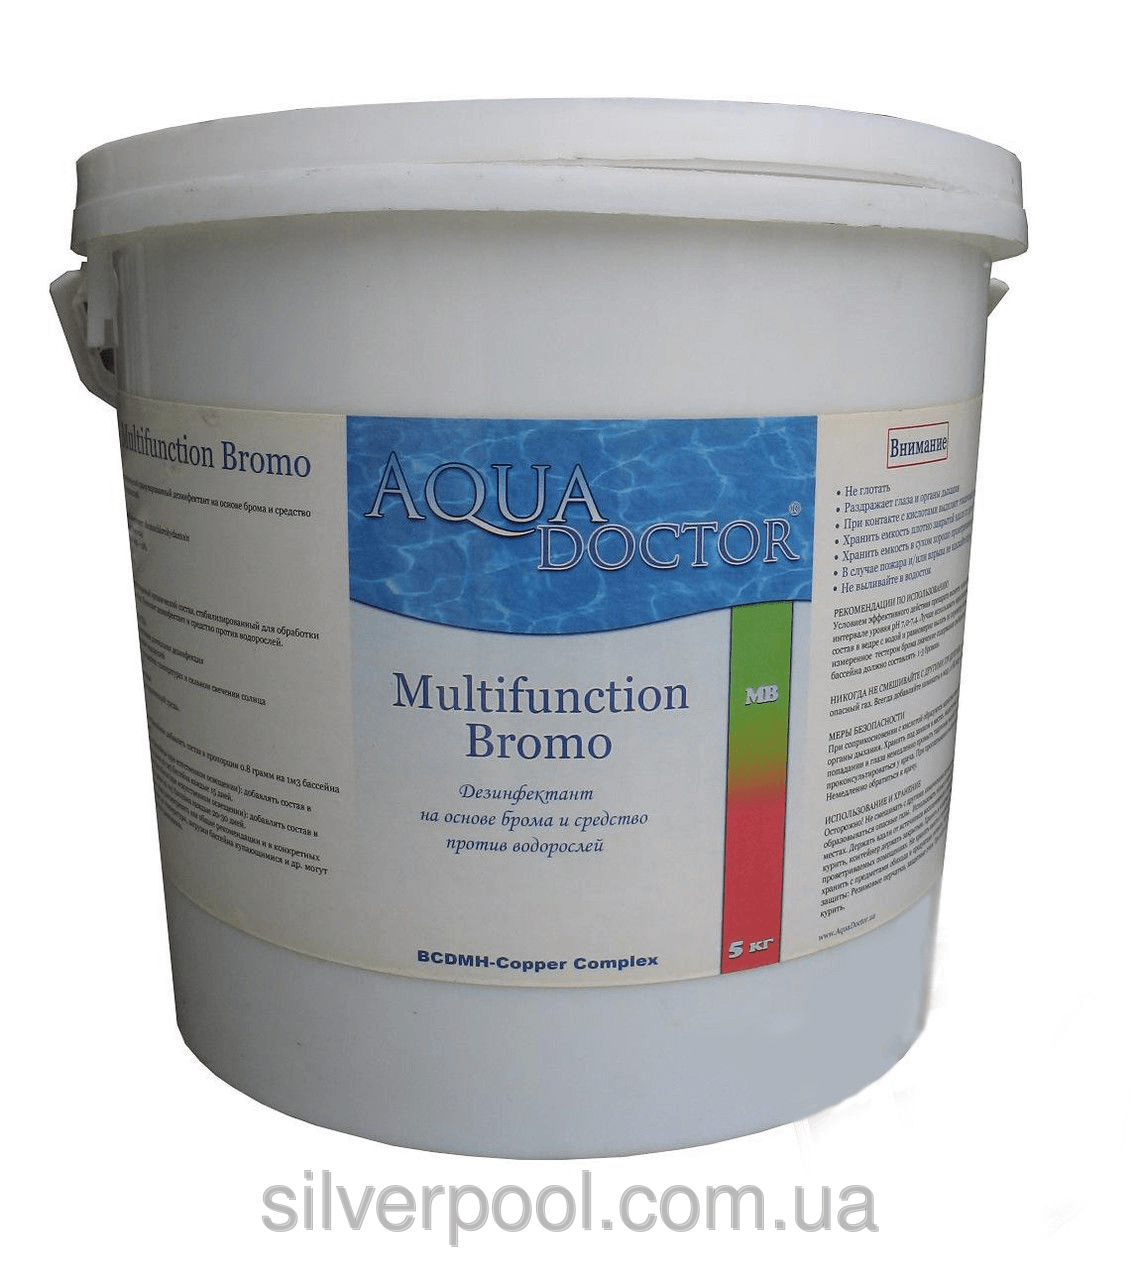 Средство для дезинфекции воды бассейна Multifunction Bromo AquaDOCTOR (гранулированный), 5 кг.